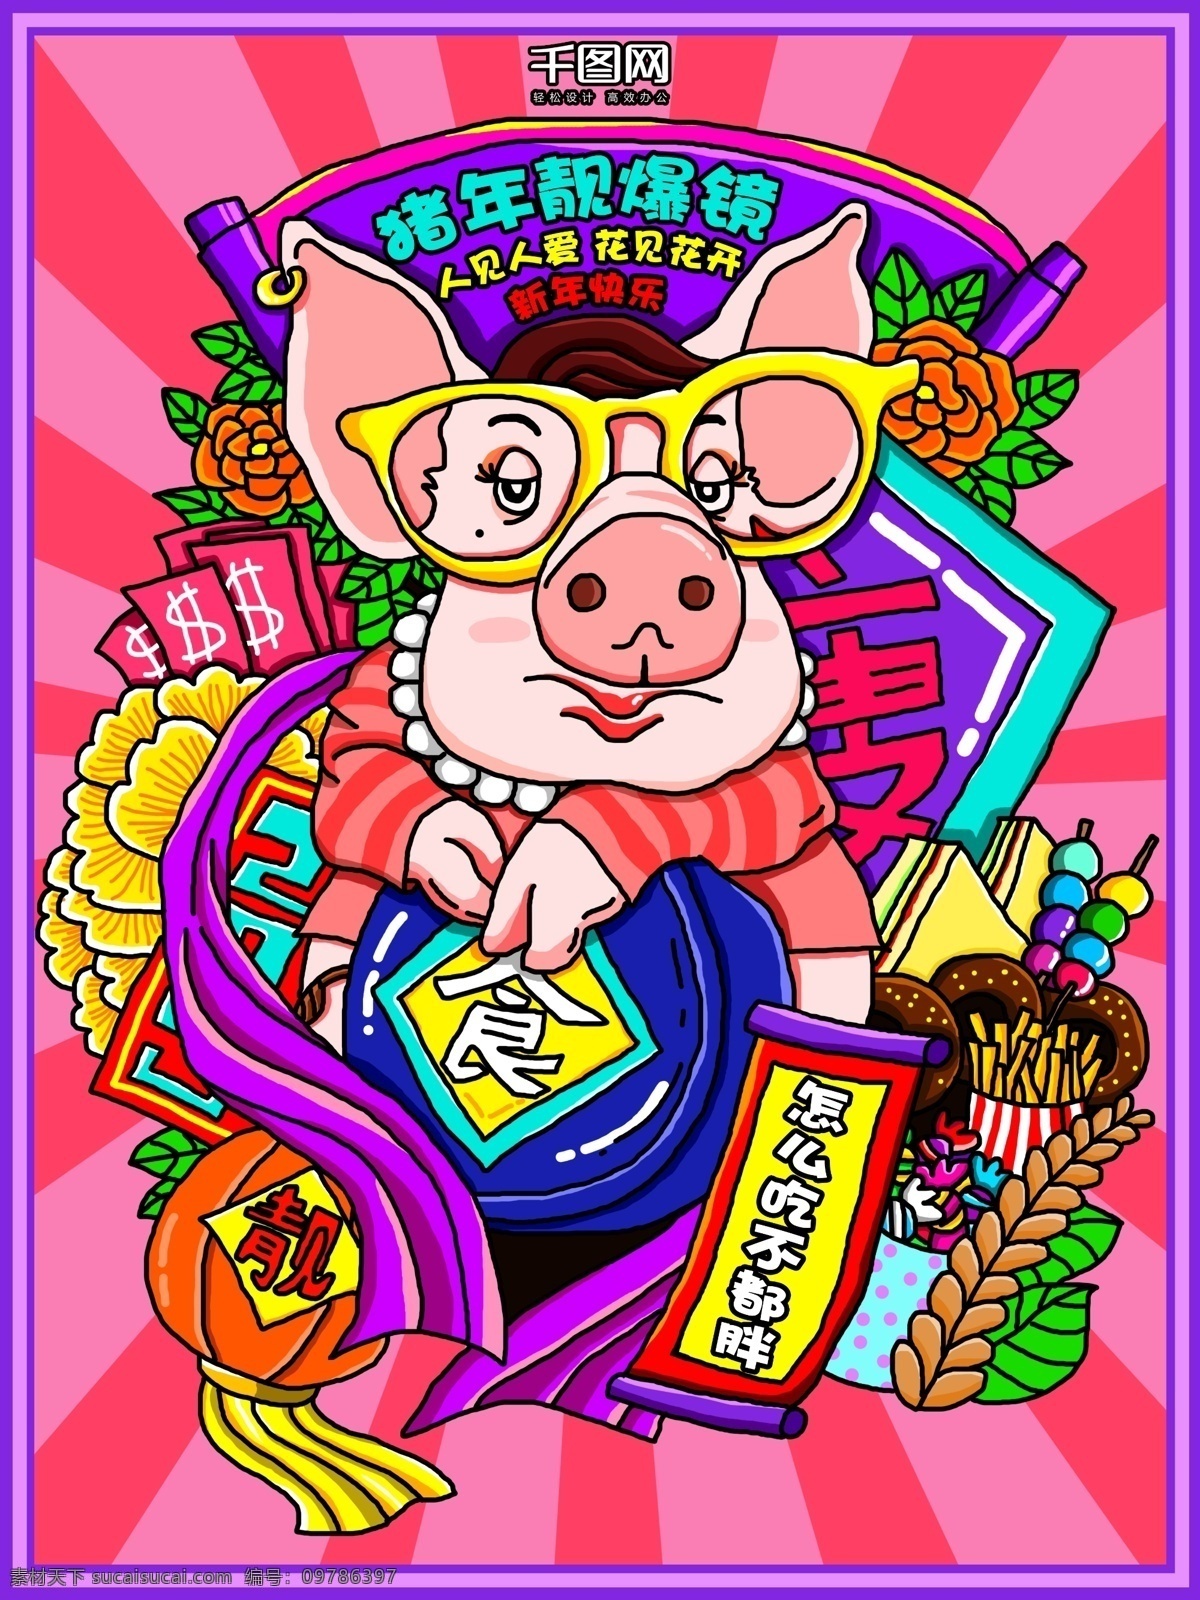 粉 紫色 2019 猪年 新年 手绘 插画 海报 灯笼 丝带 眼镜 叶子 猪 新春 节日 宣传单 粉紫色 食物 花 美丽 瘦 糖果 薯条 饼干